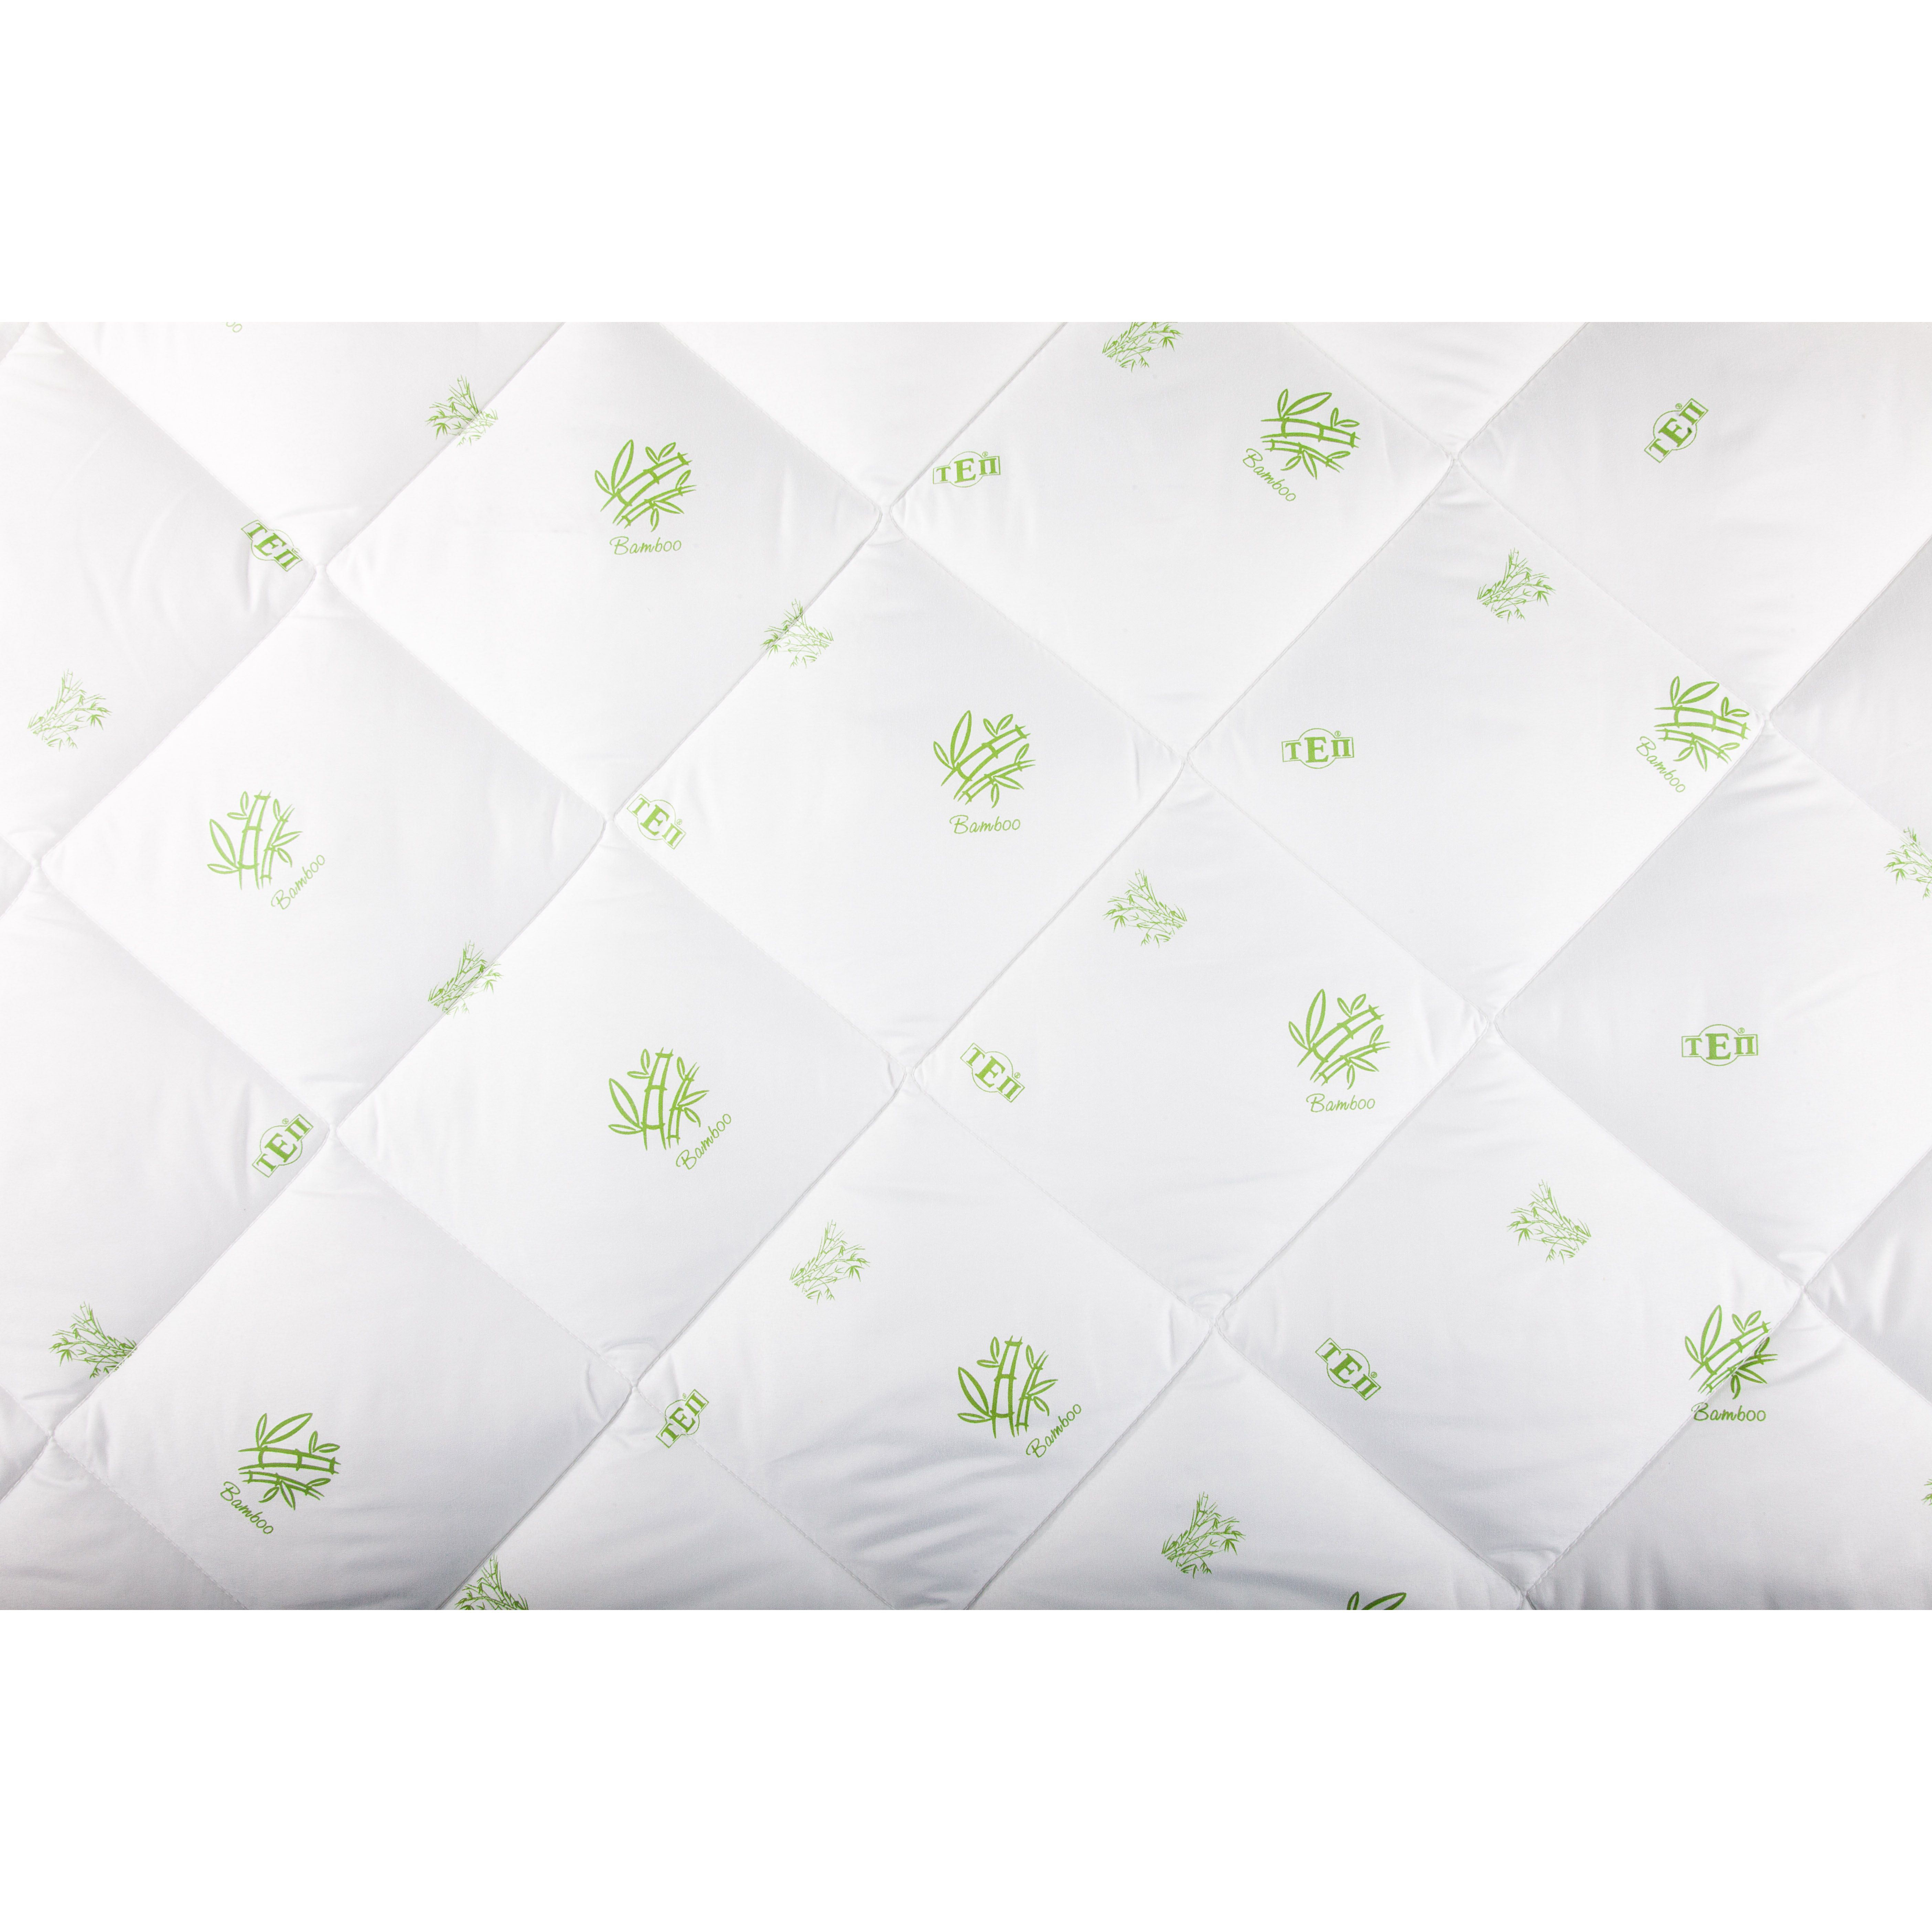 Одеяло ТЕП Dream Collection Bamboo 150x210 белое (1-00762_00000) - фото 4